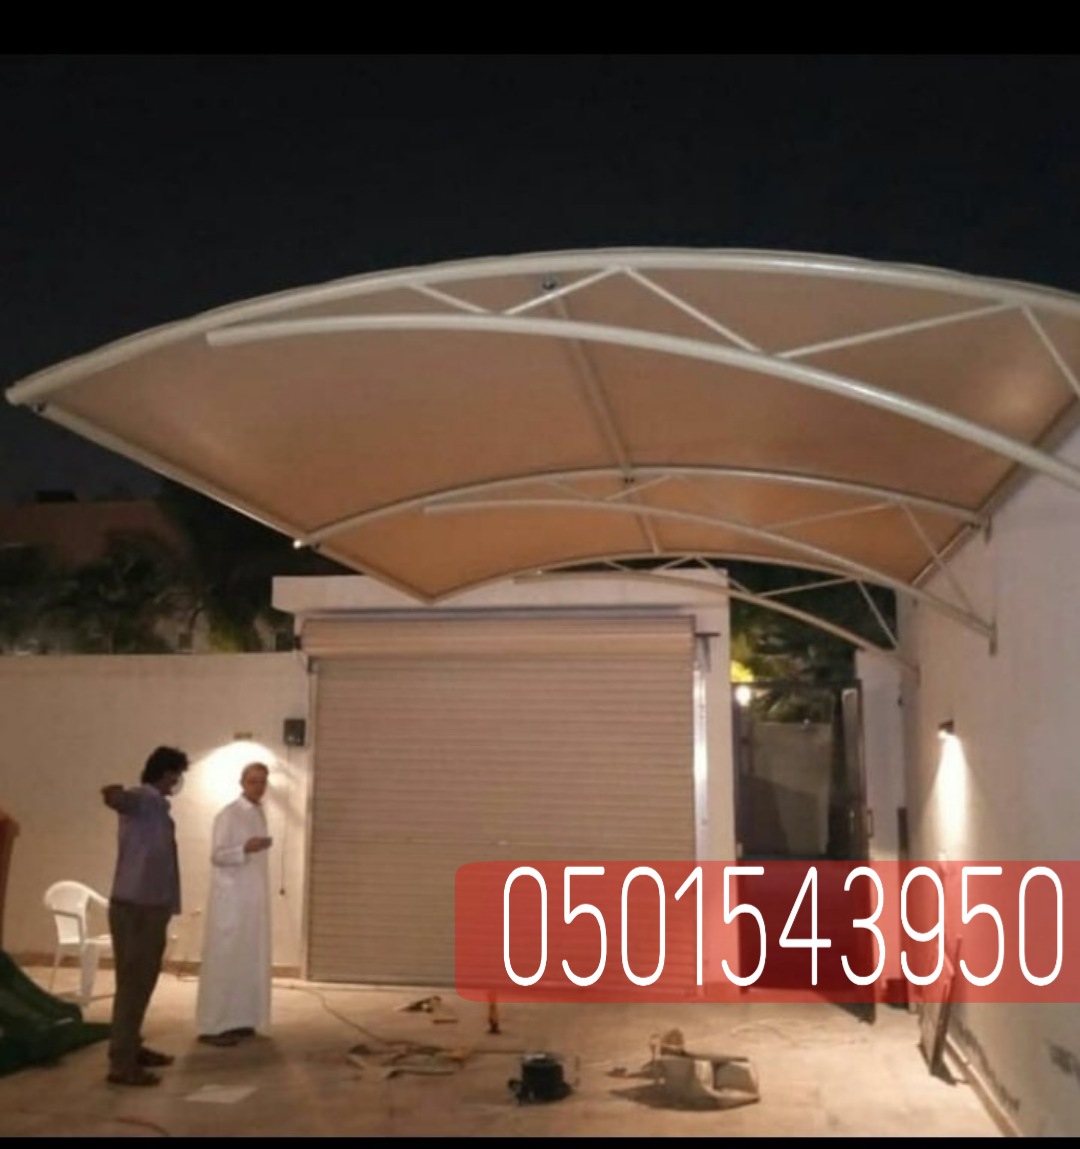 انواع مظلات السيارات في الرياض , 0501543950